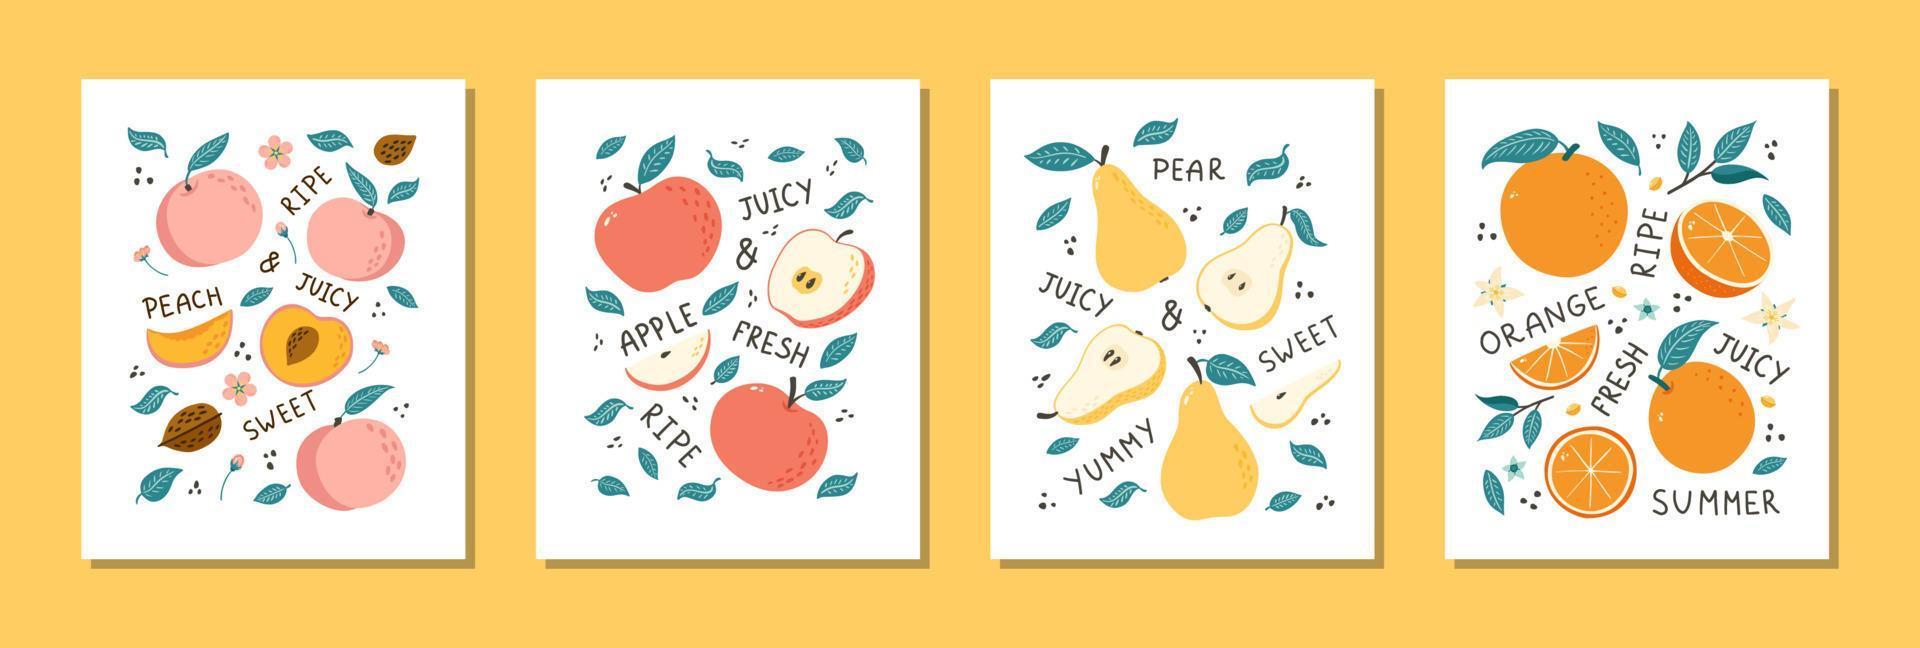 set di natura morta di frutta disegnata a mano. illustrazioni di frutta in stile doodle per poster, banner, sfondo, etichetta del mercato, logo, adesivo, cartolina, menu, design e decorazione di pacchetti alimentari vettore